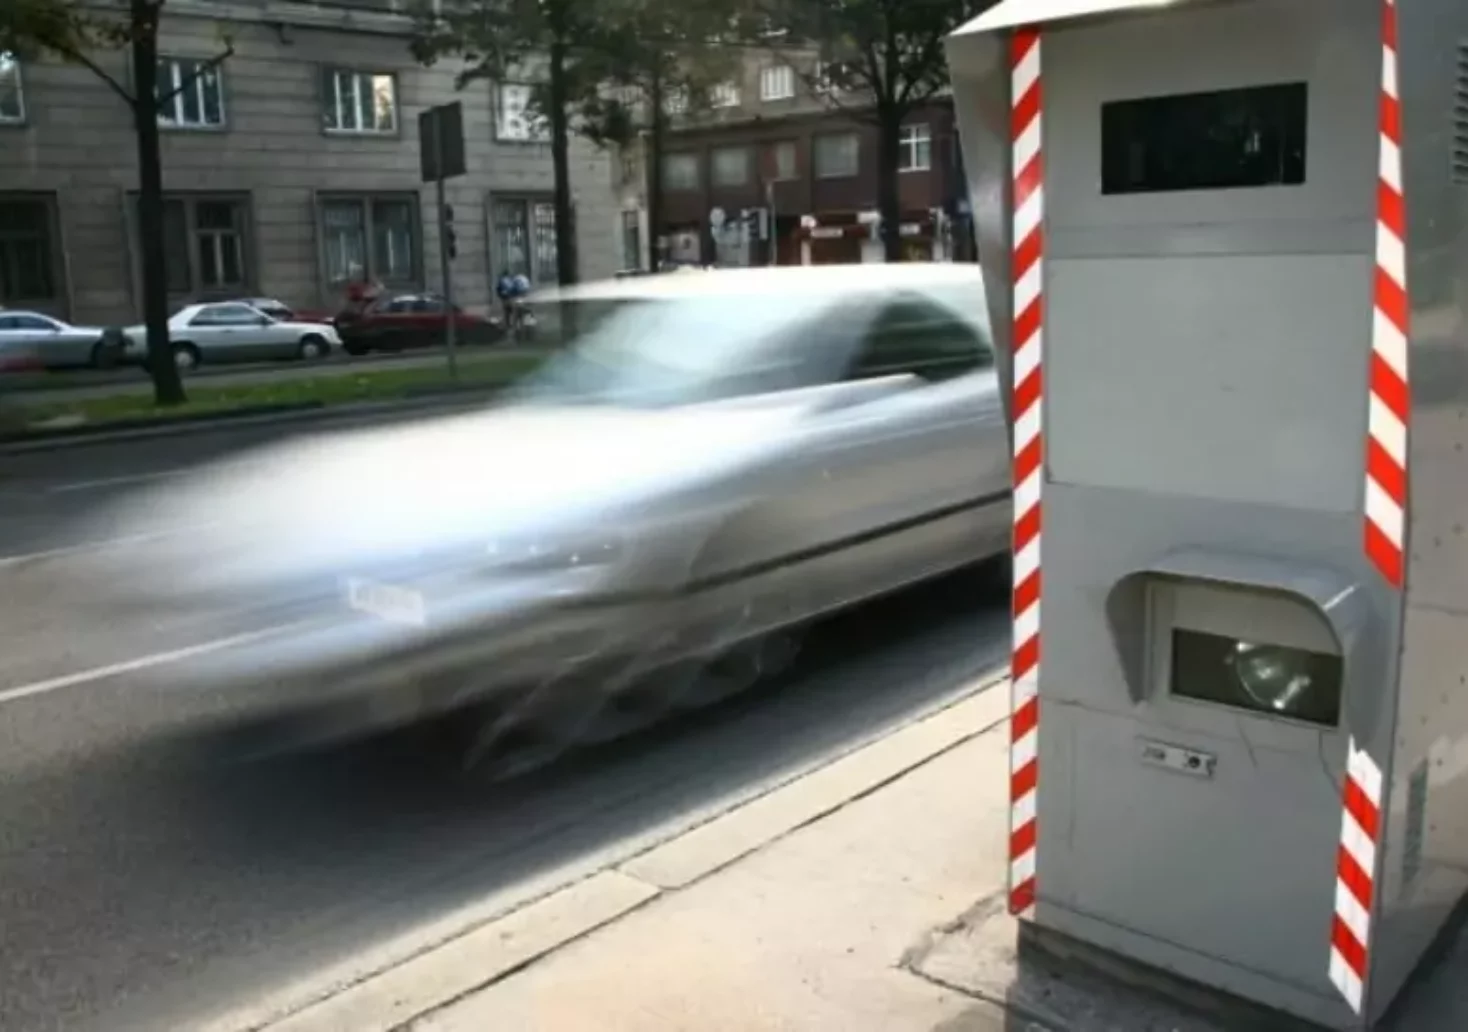 Foto in Beitrag von 5min.at: Zu sehen ist ein Radarkasten, an dem ein Auto vorbeifährt.